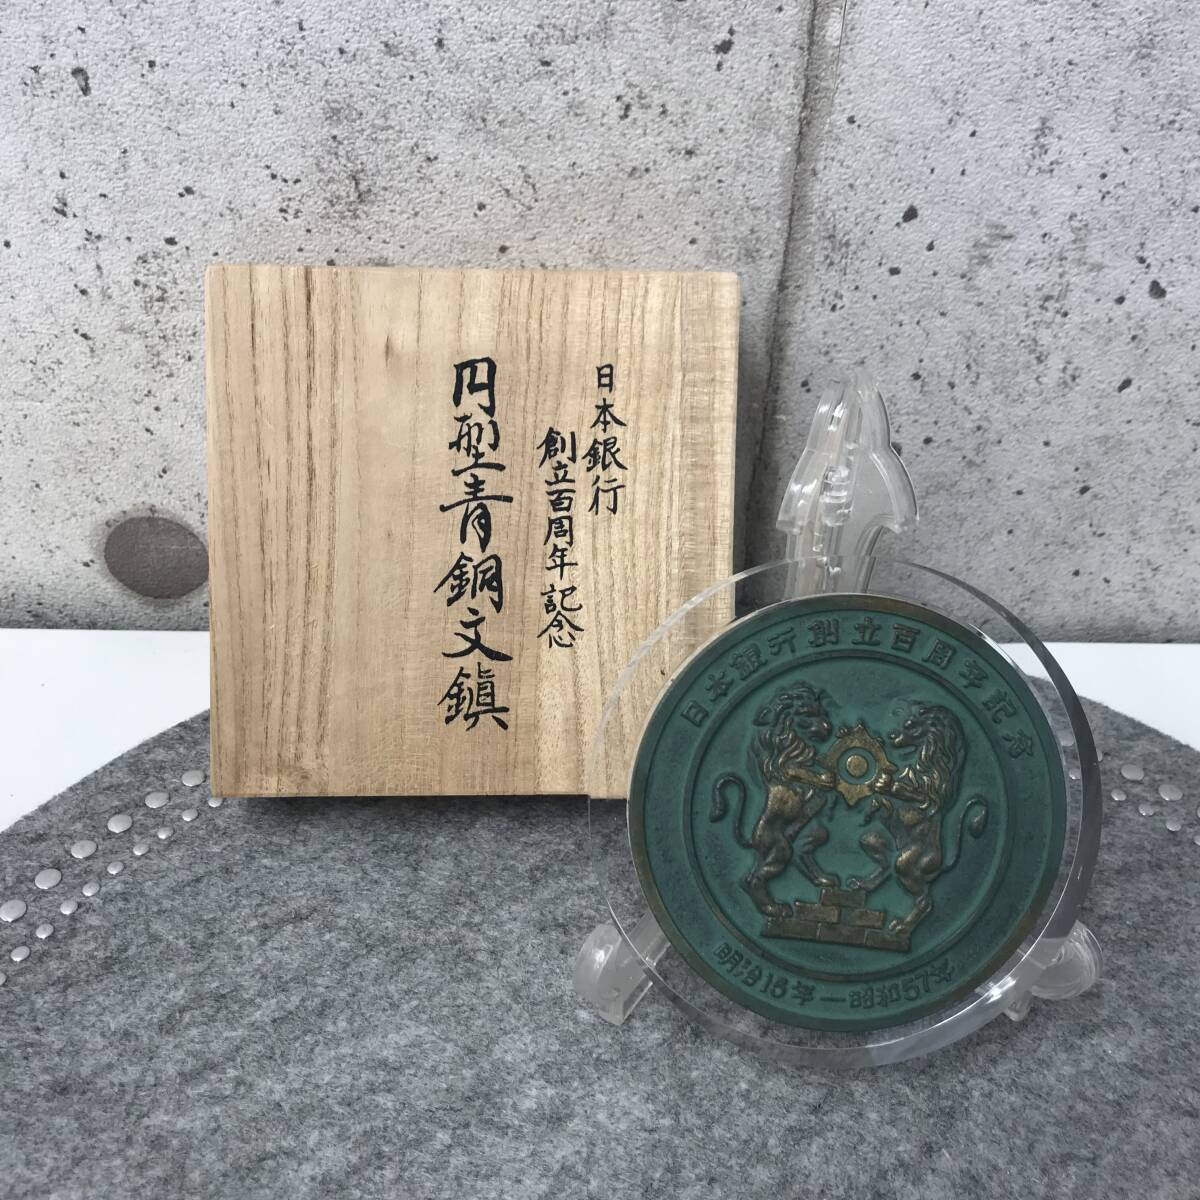 送料無料】日本銀行創立100周年記念 円型青銅文鎮 共箱あり 直径10cm